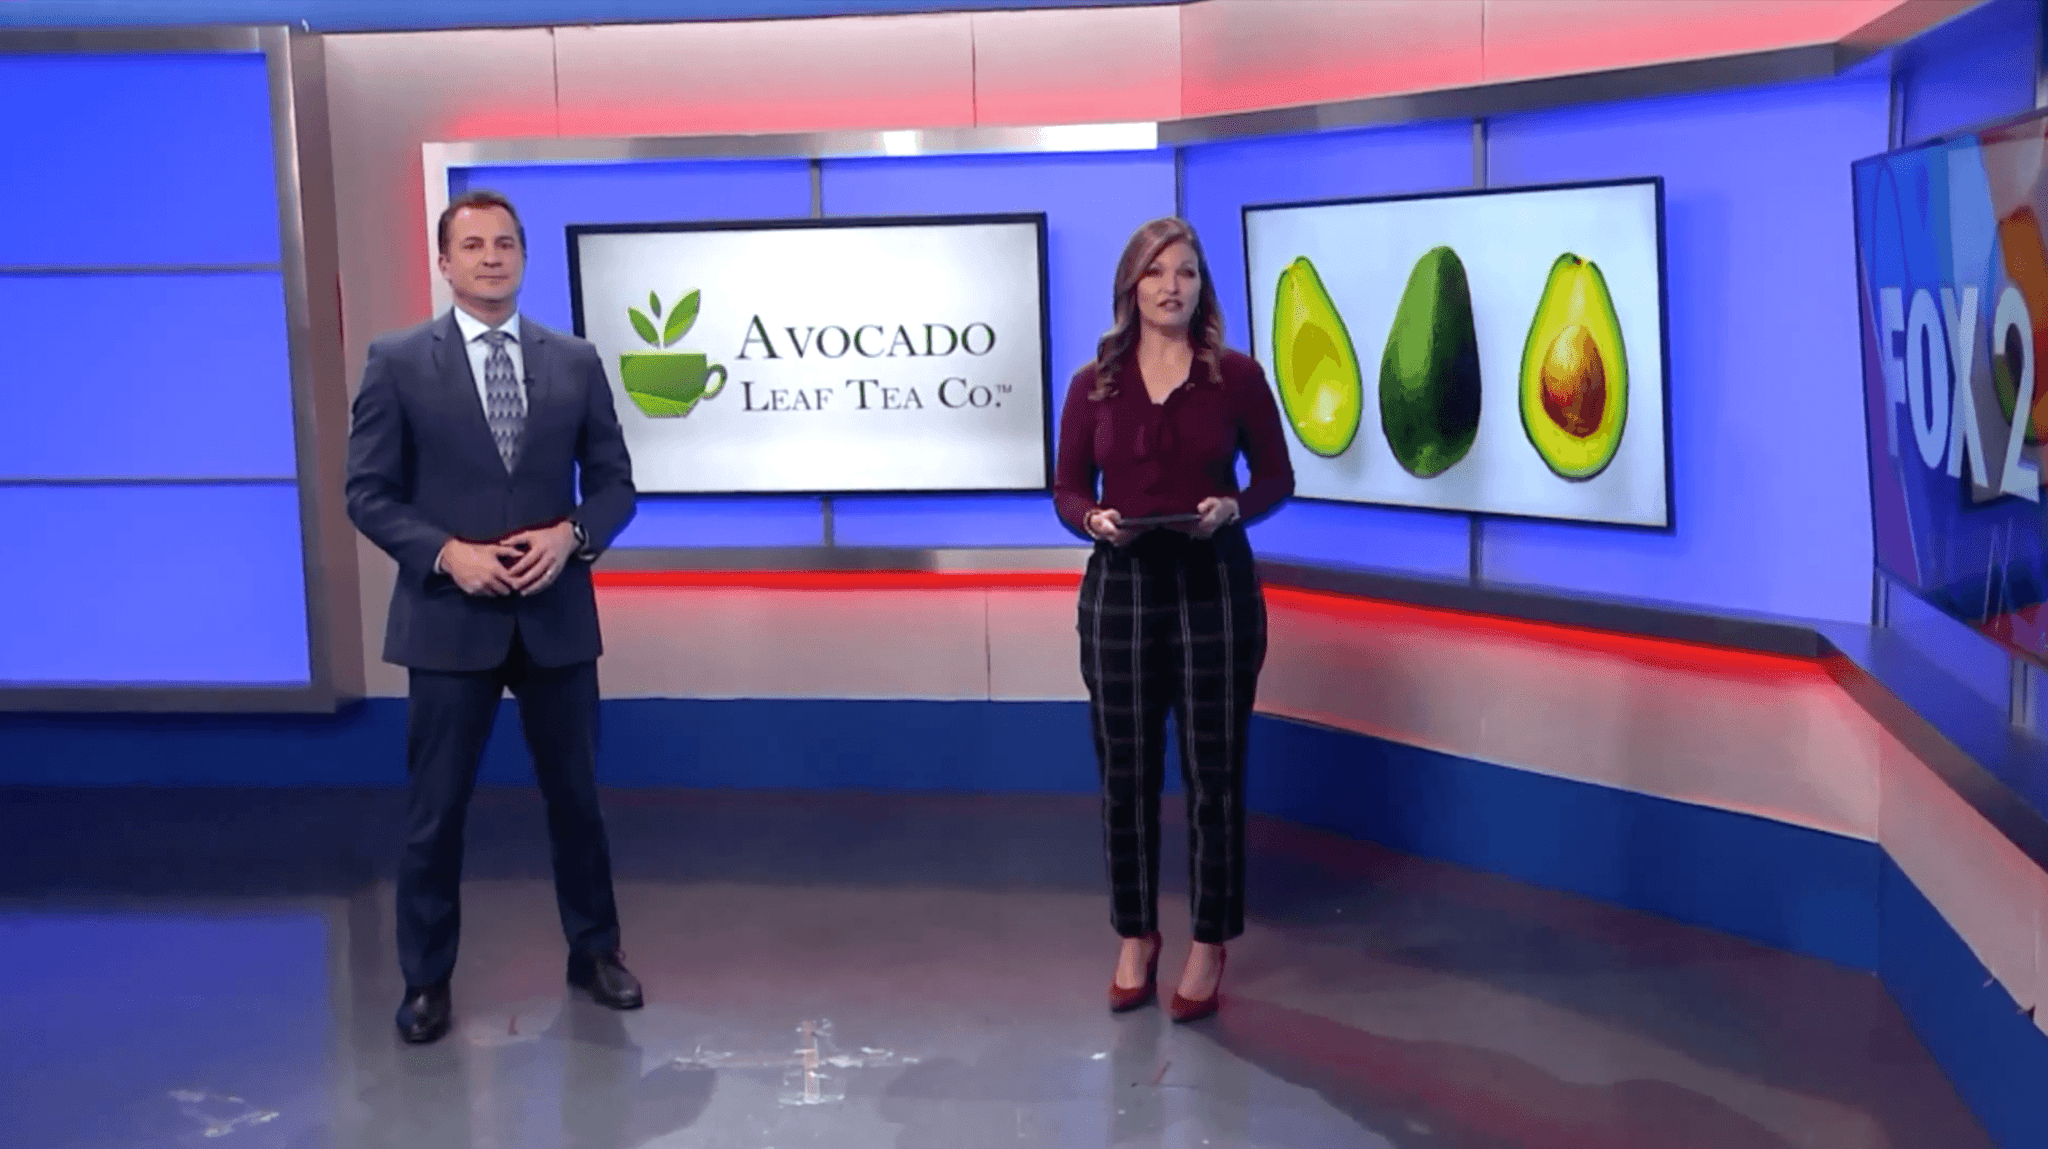 KTVI News Story About Avocado Tea